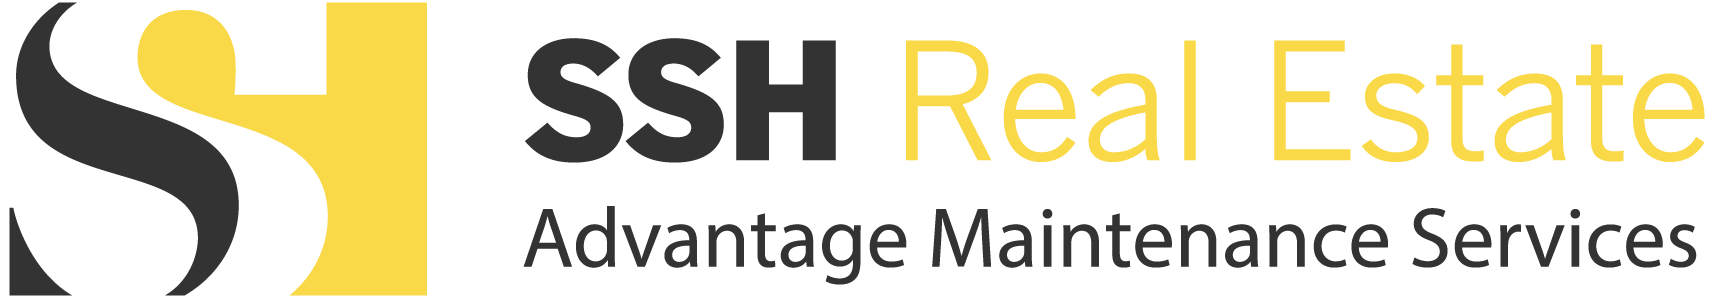 SSH Real Estate